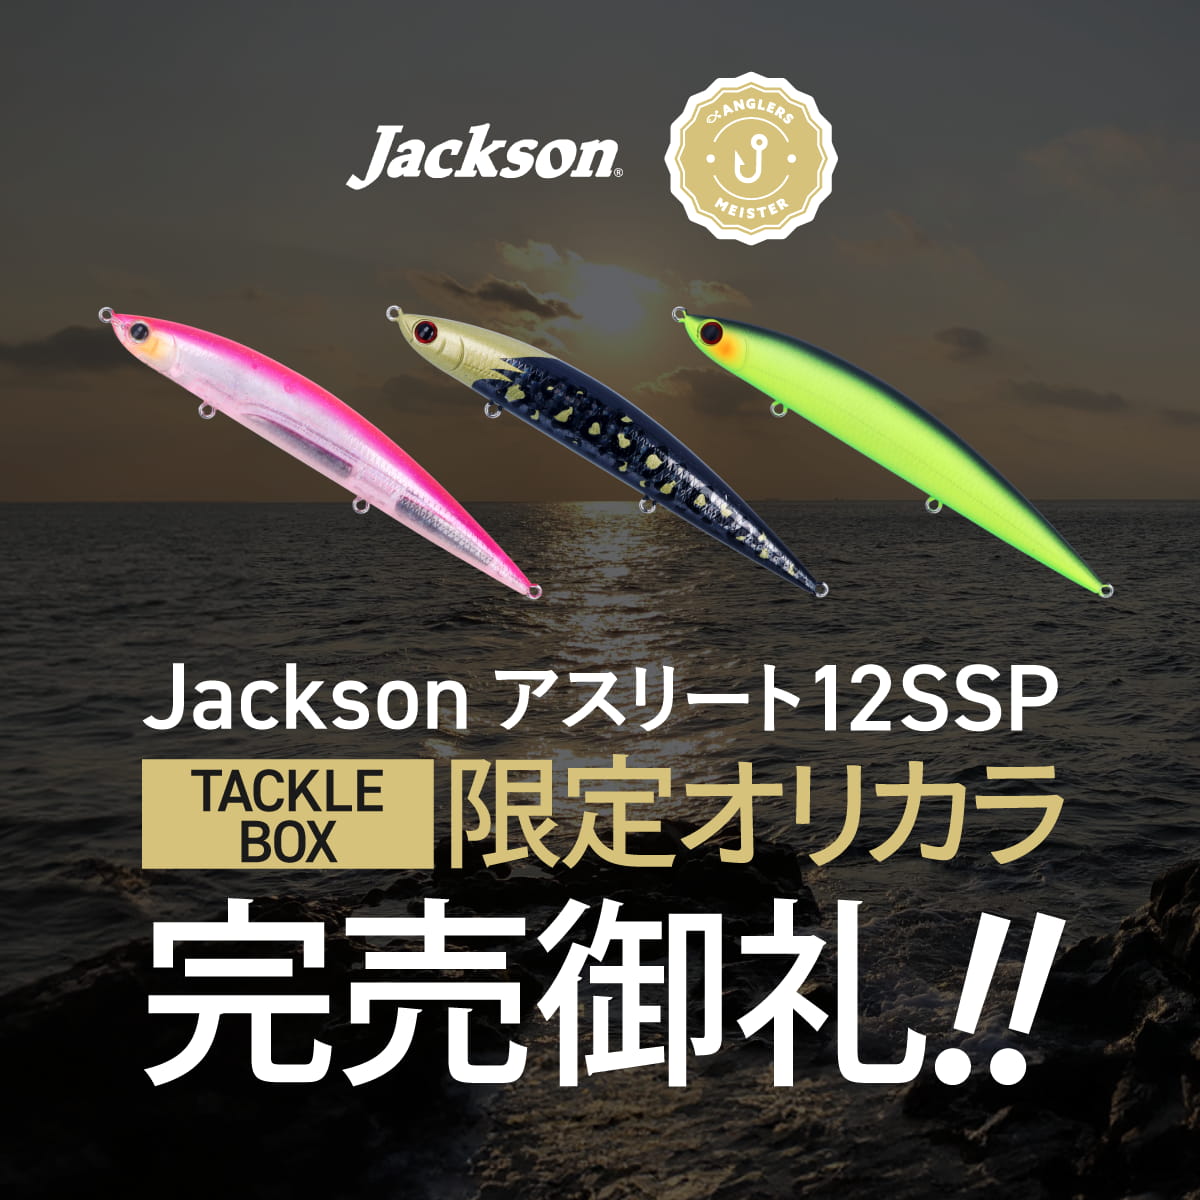 Jackson 【直販限定】アスリート Jackson×アングラーズマイスター 